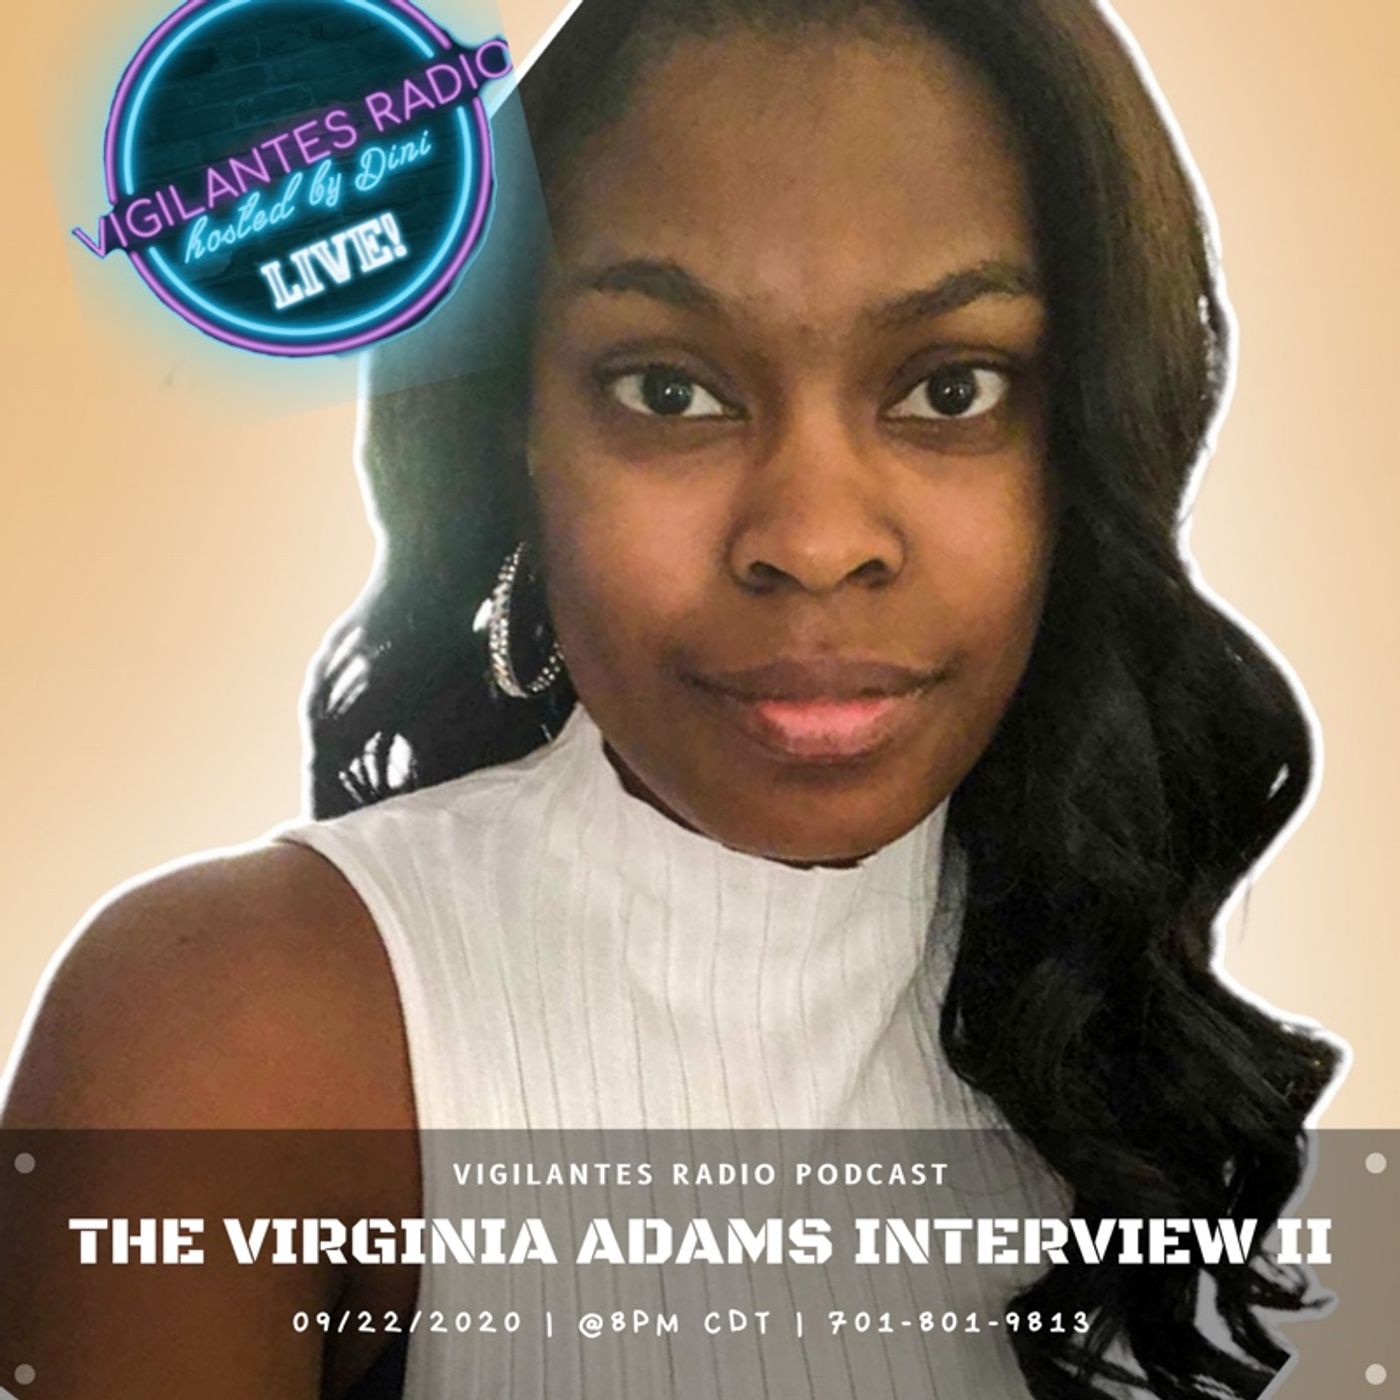 The Virginia Adams Interview II. Image